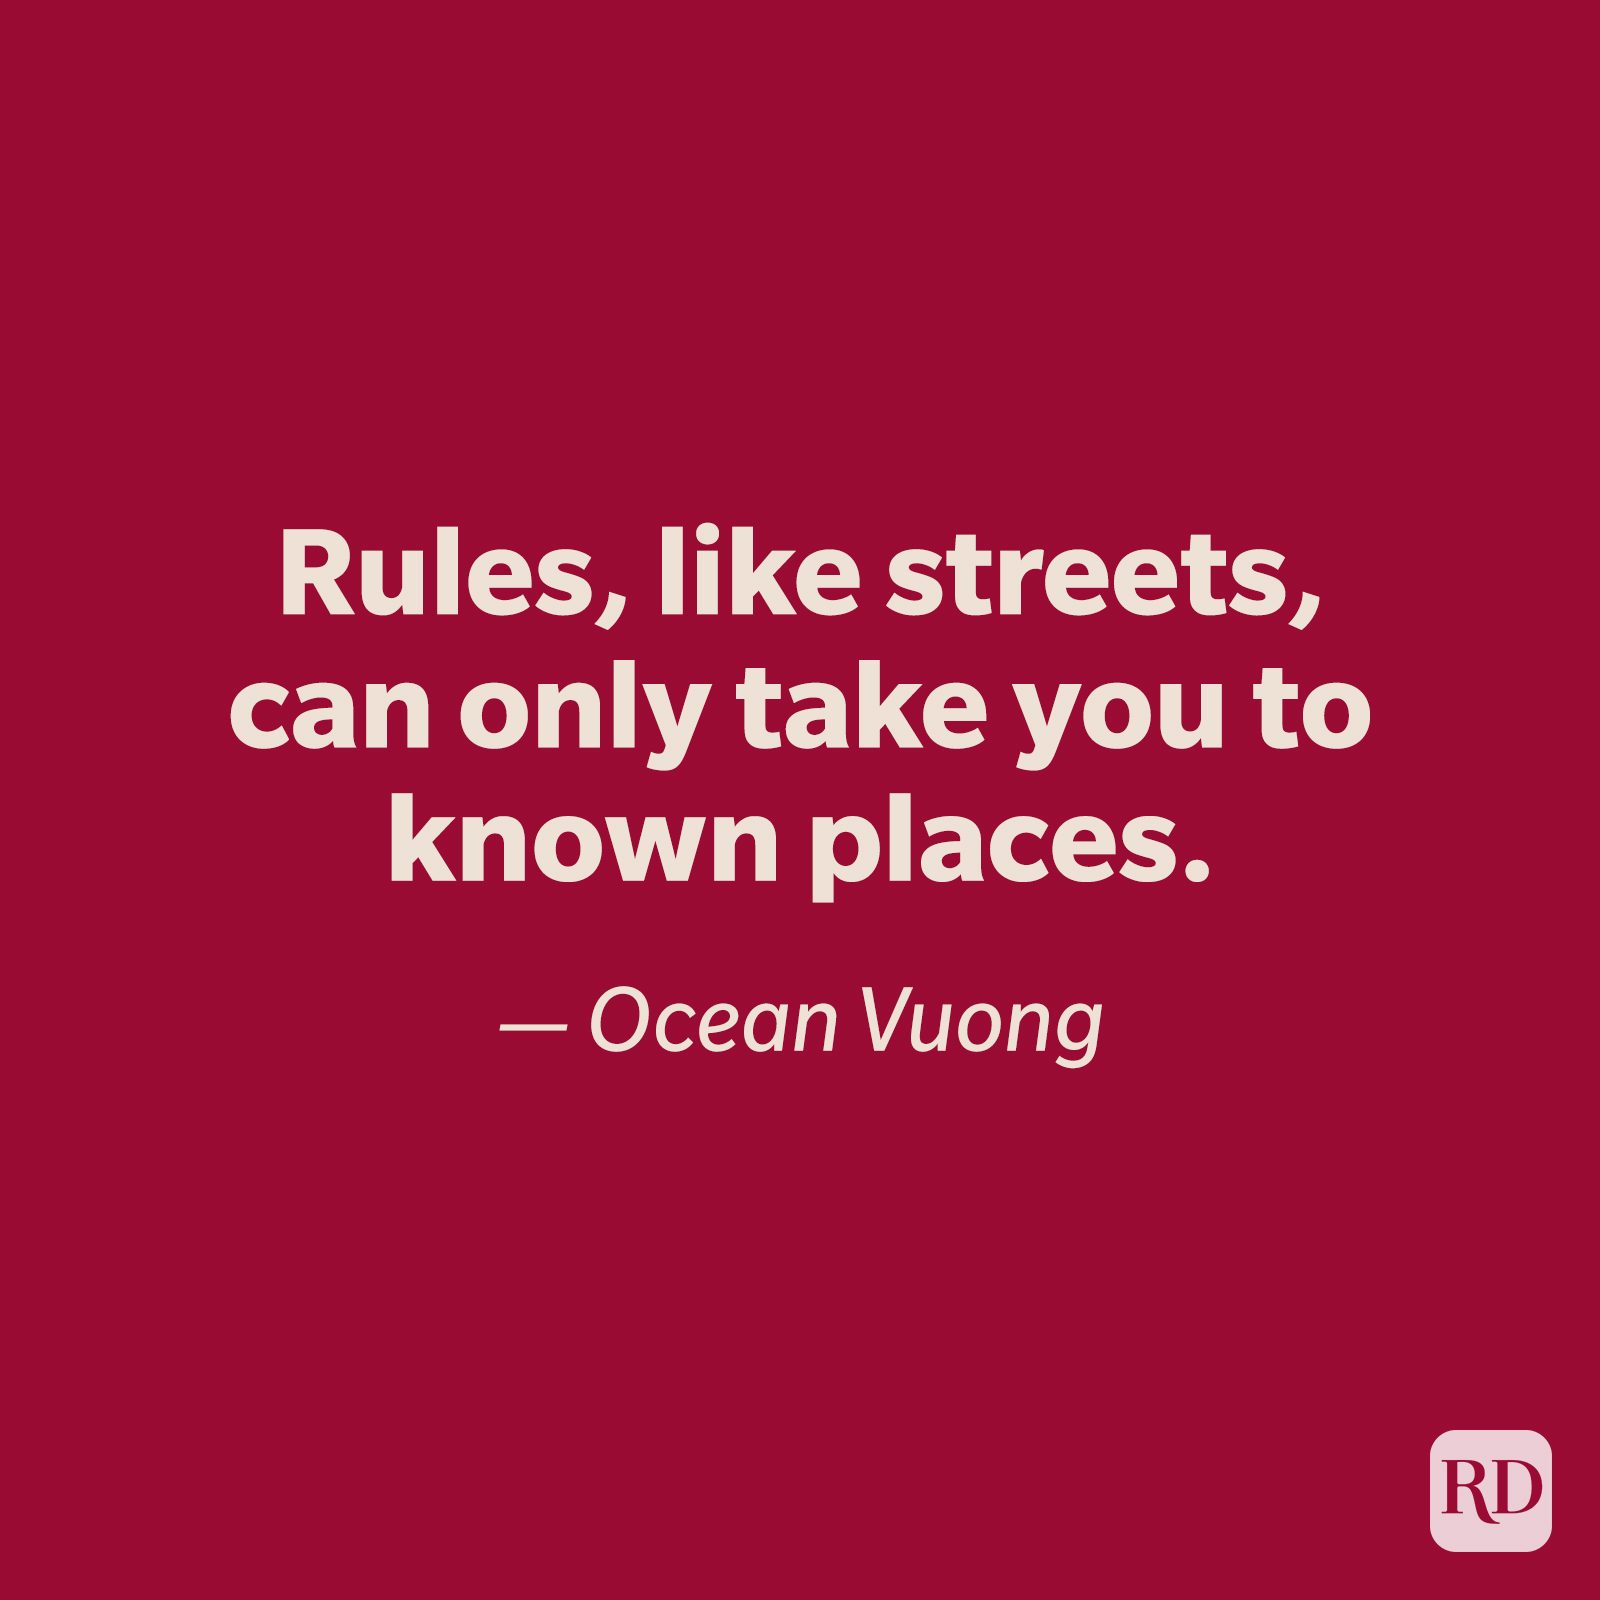 Ocean Vuong quote